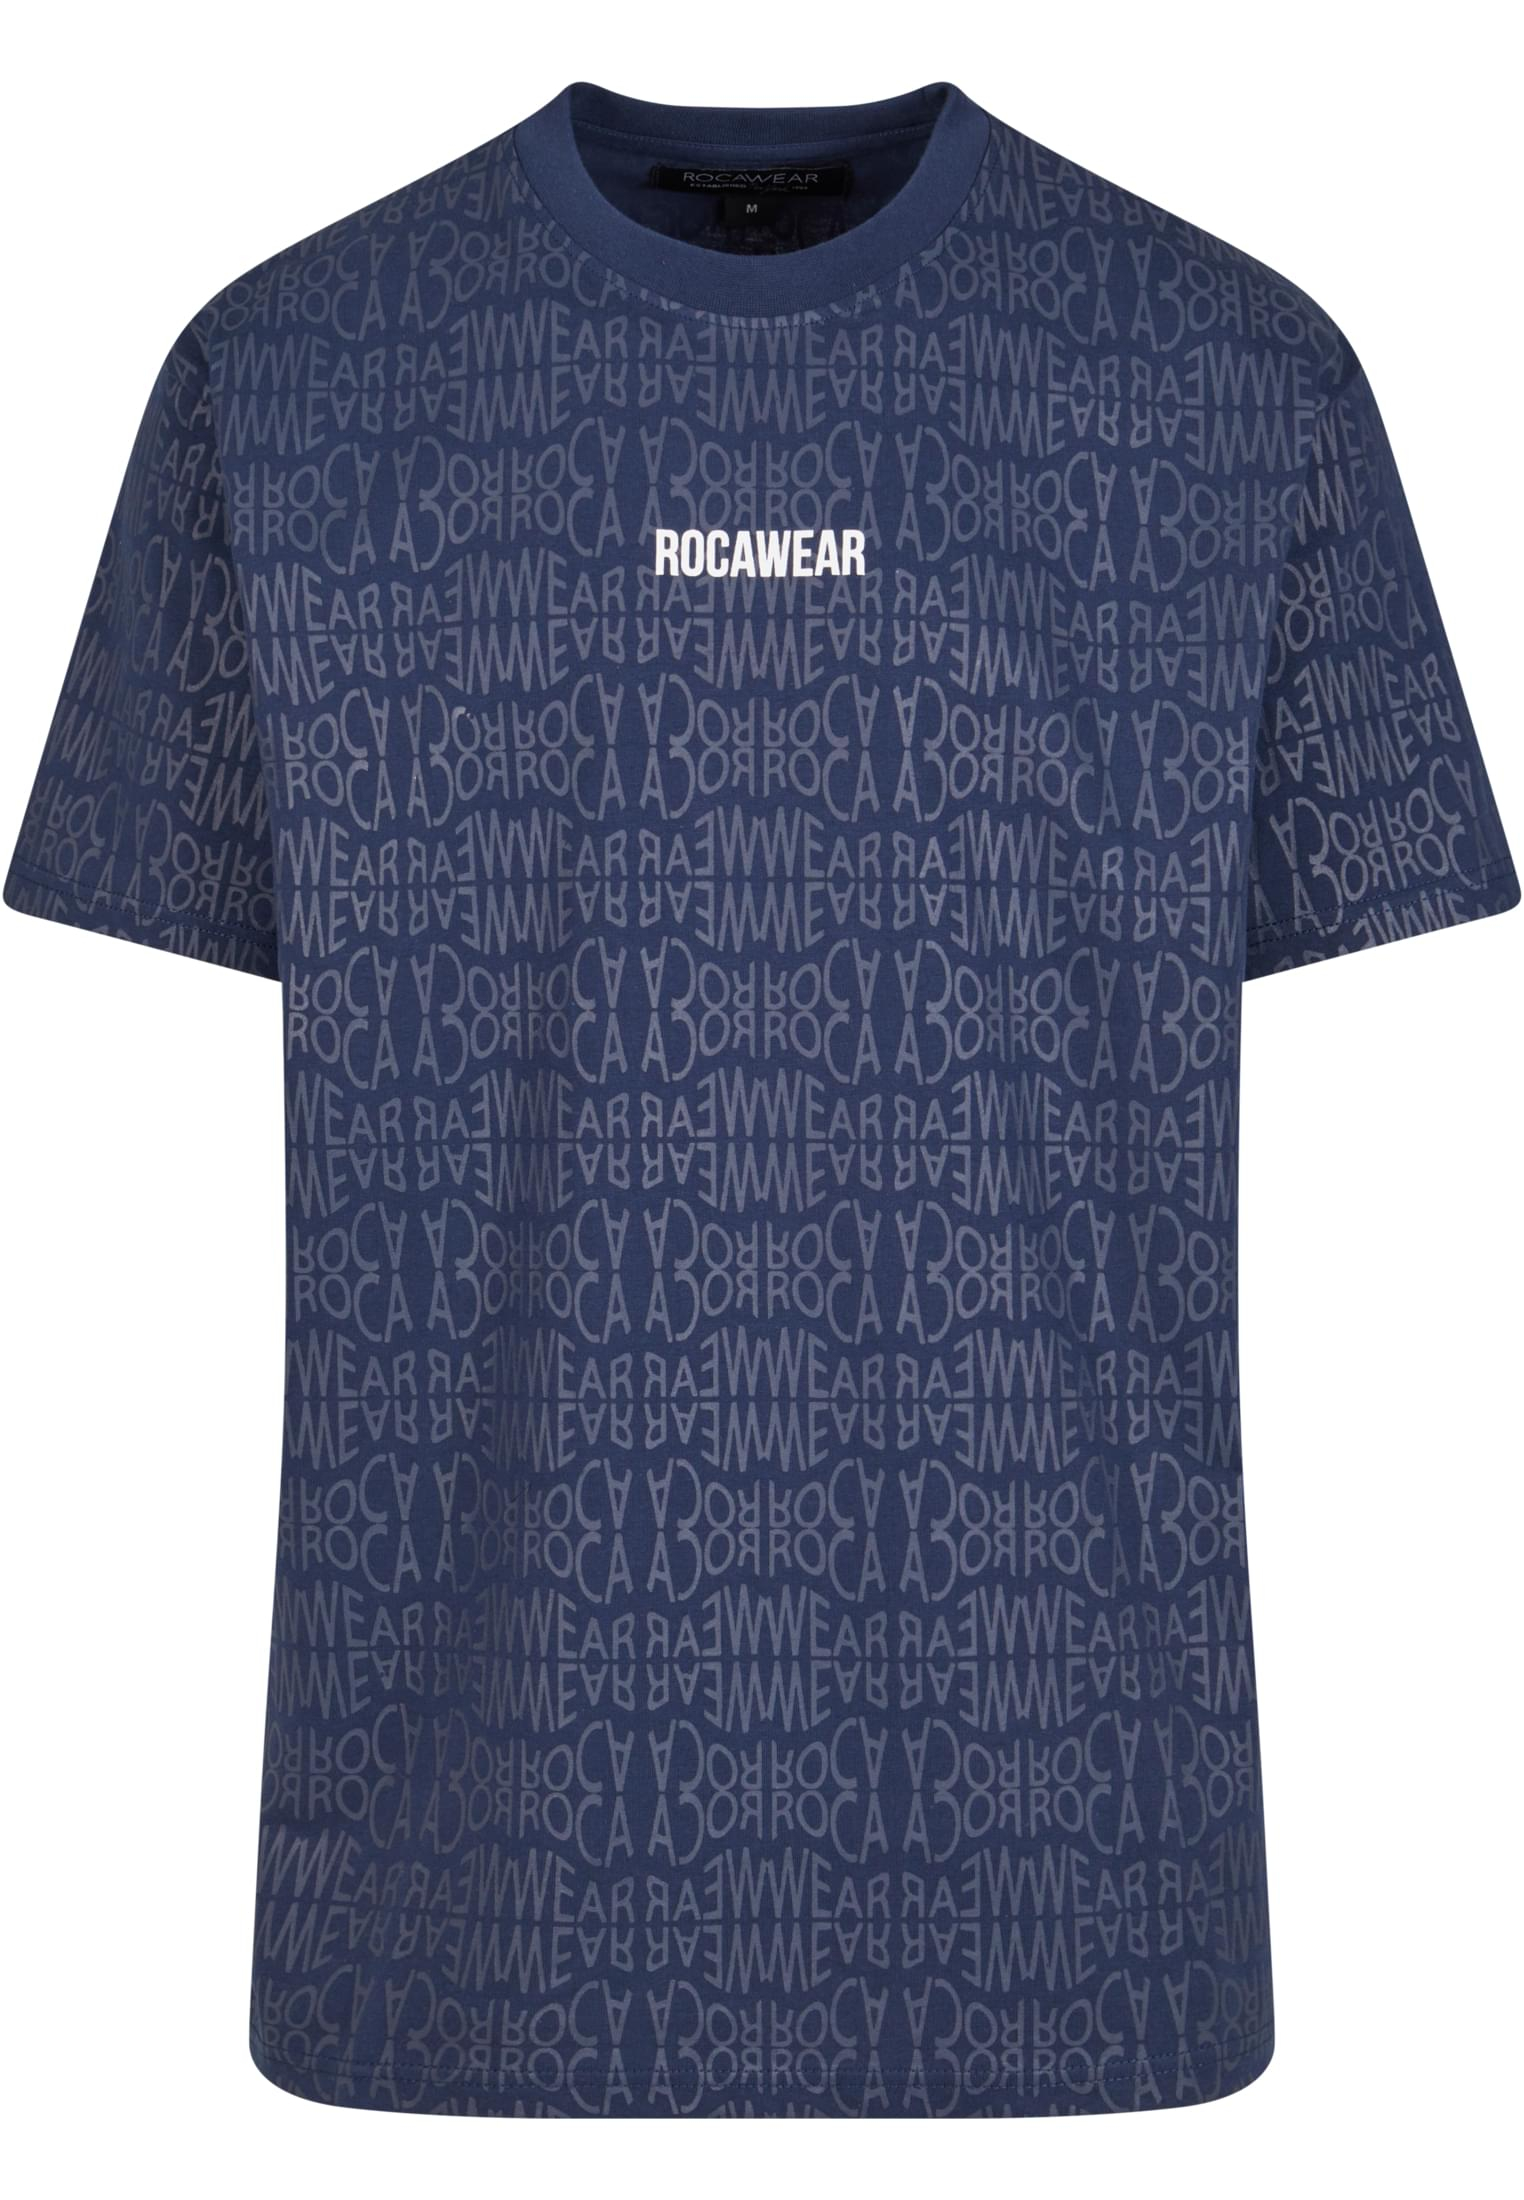 Men's T-shirt Rocawear - blue